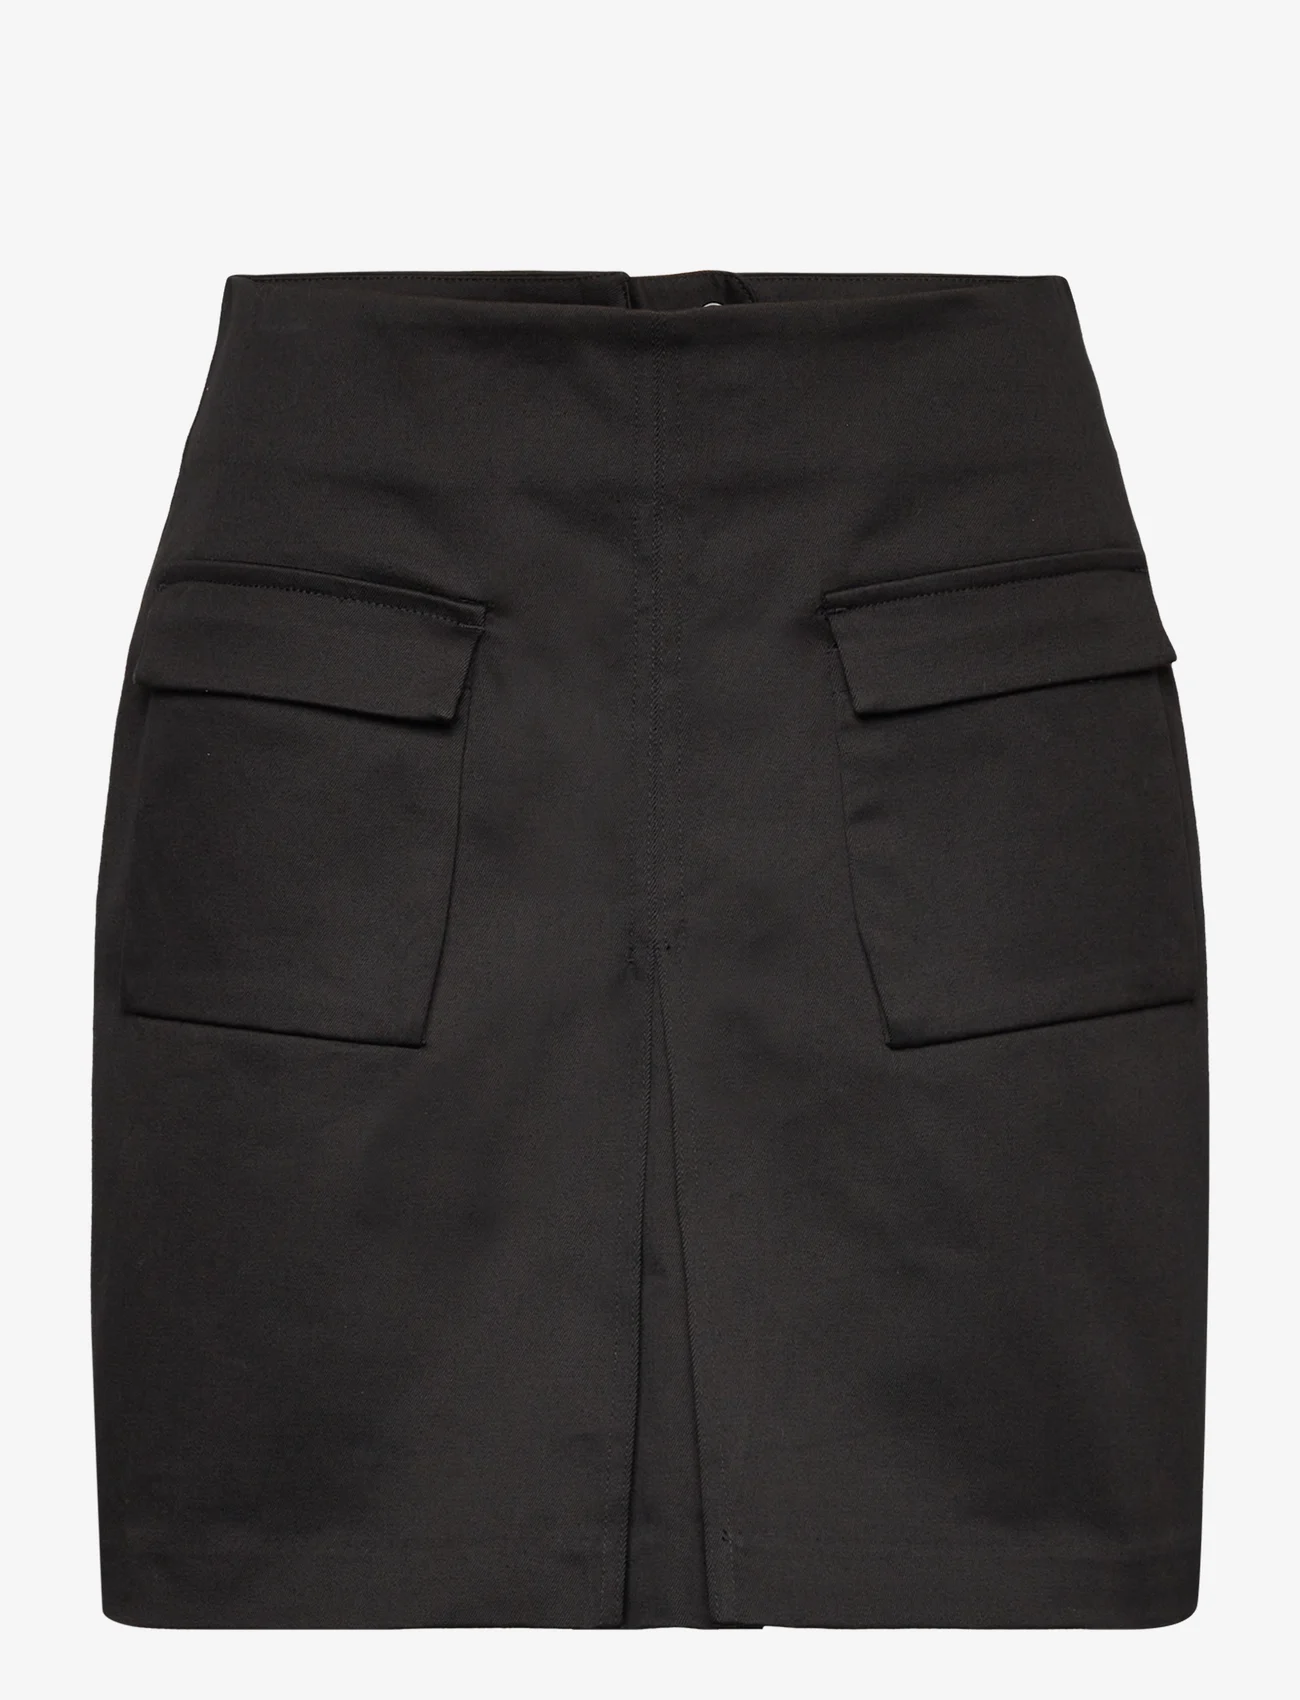 HOLZWEILER - Caro Cargo Skirt - korte nederdele - black - 0